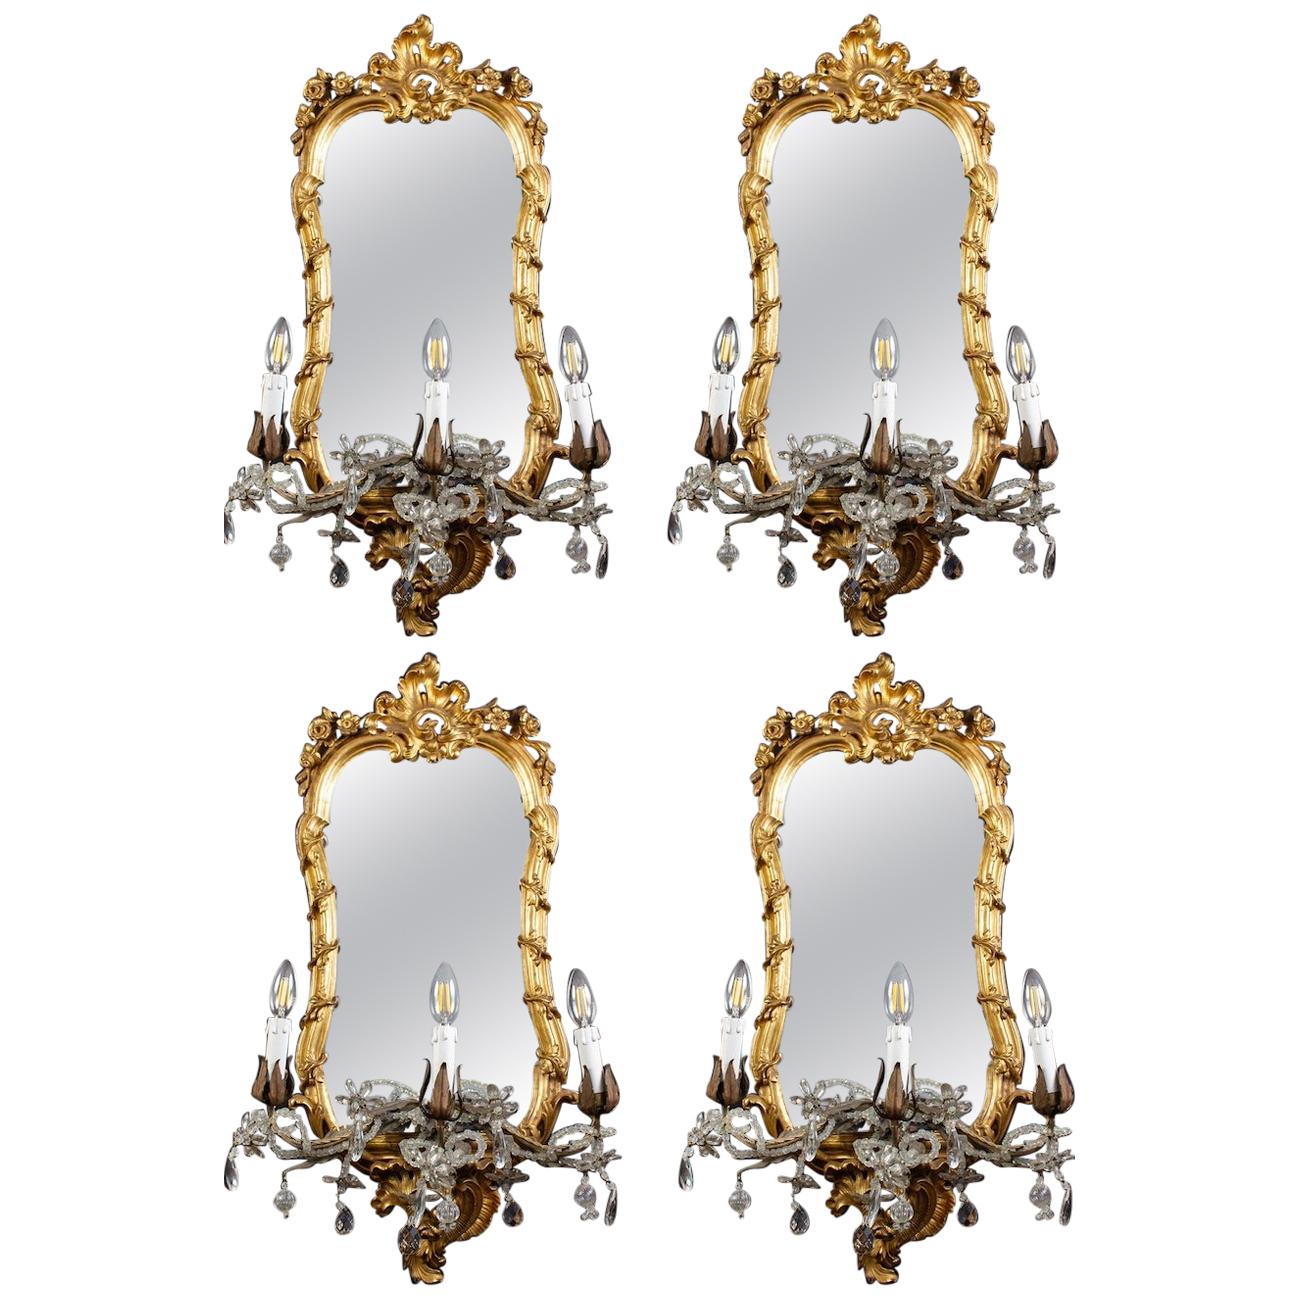 Quatre miroirs ou appliques en bois doré italiens du XVIIIe siècle Roma:: 1750